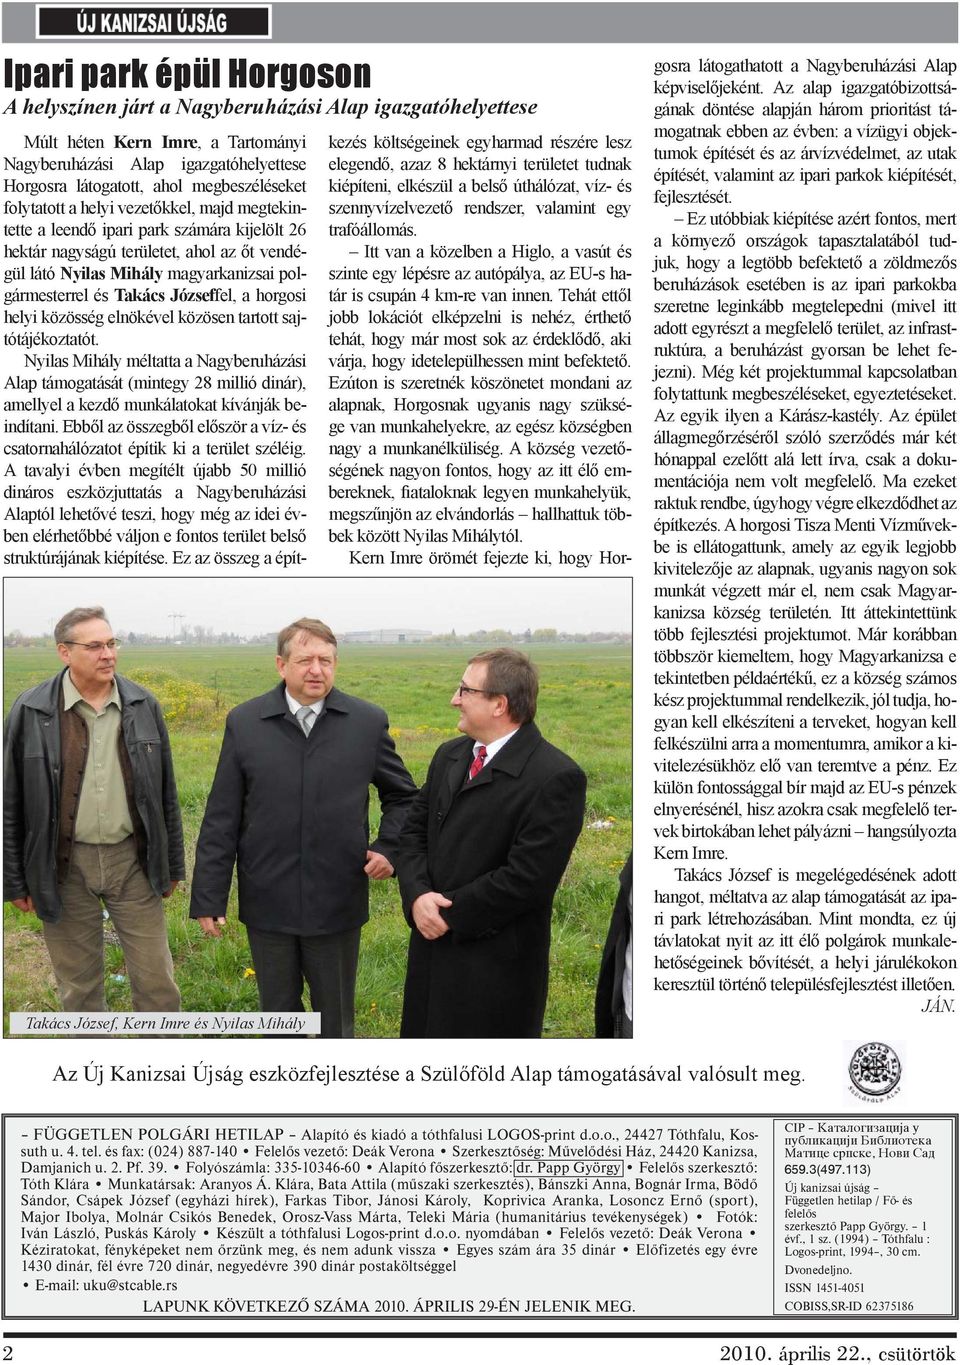 magyarkanizsai polgármesterrel és Takács Józseffel, a horgosi helyi közösség elnökével közösen tartott sajtótájékoztatót.